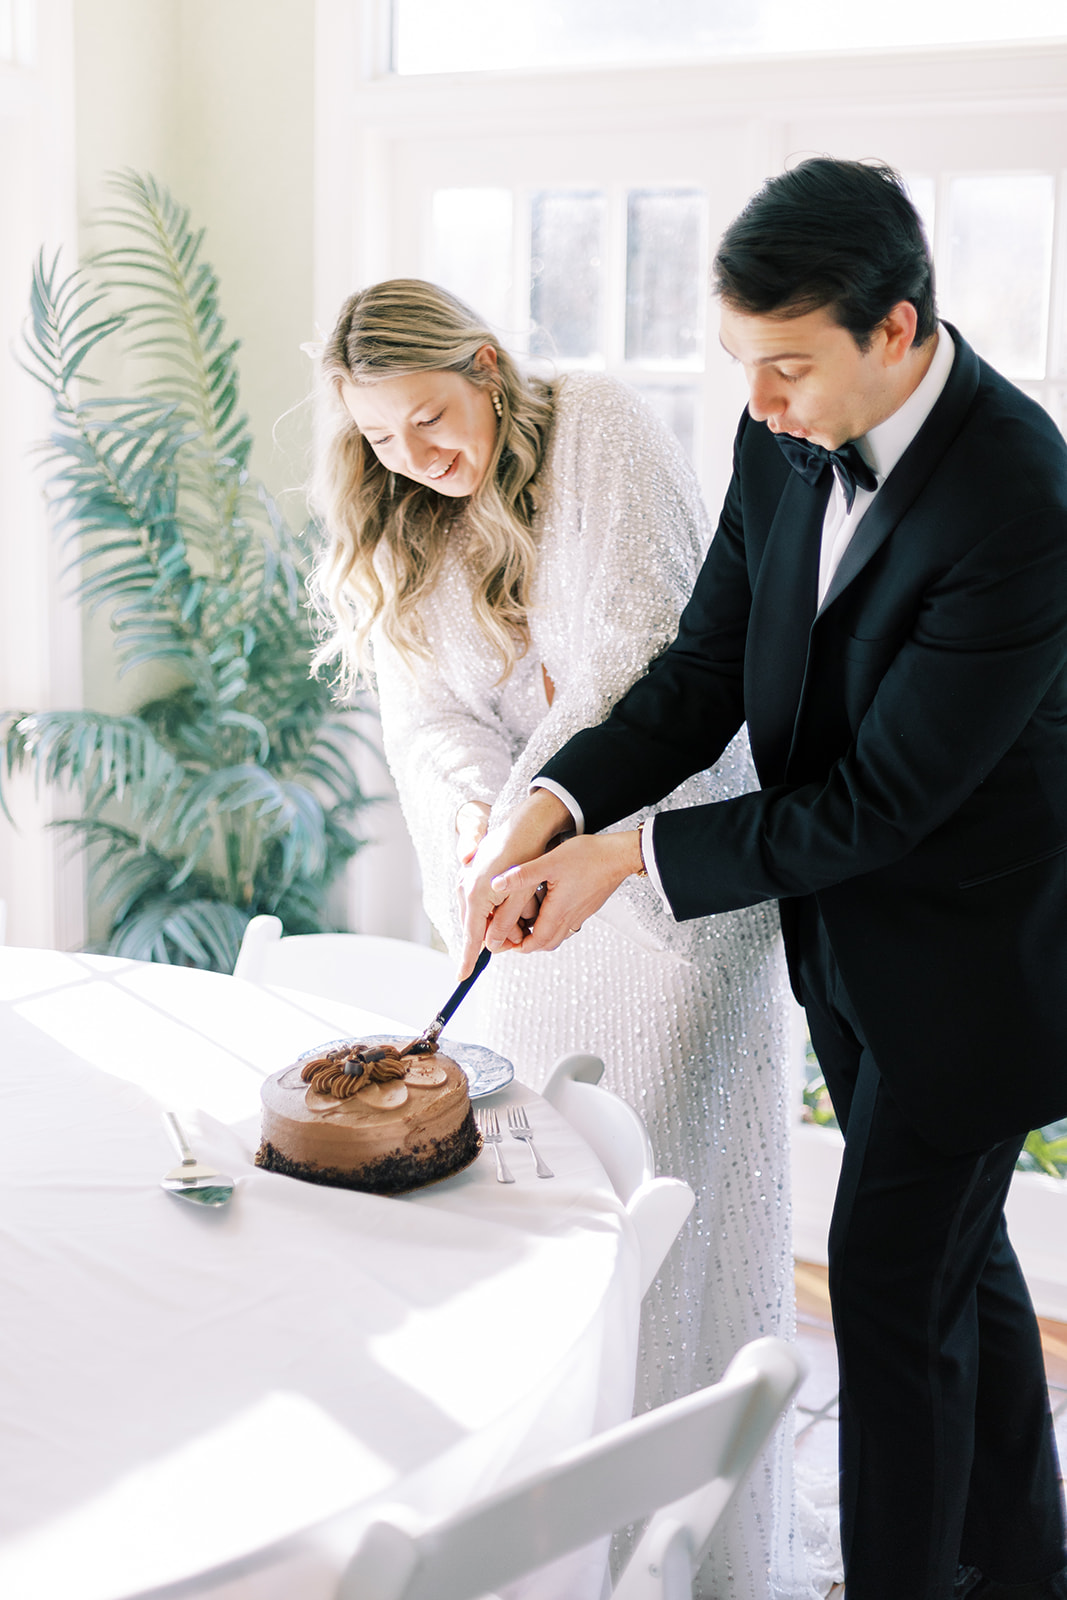 white wedding decor brown cake chocolate wedding cake v neck wedding dress black and white tux blue china cake cutting